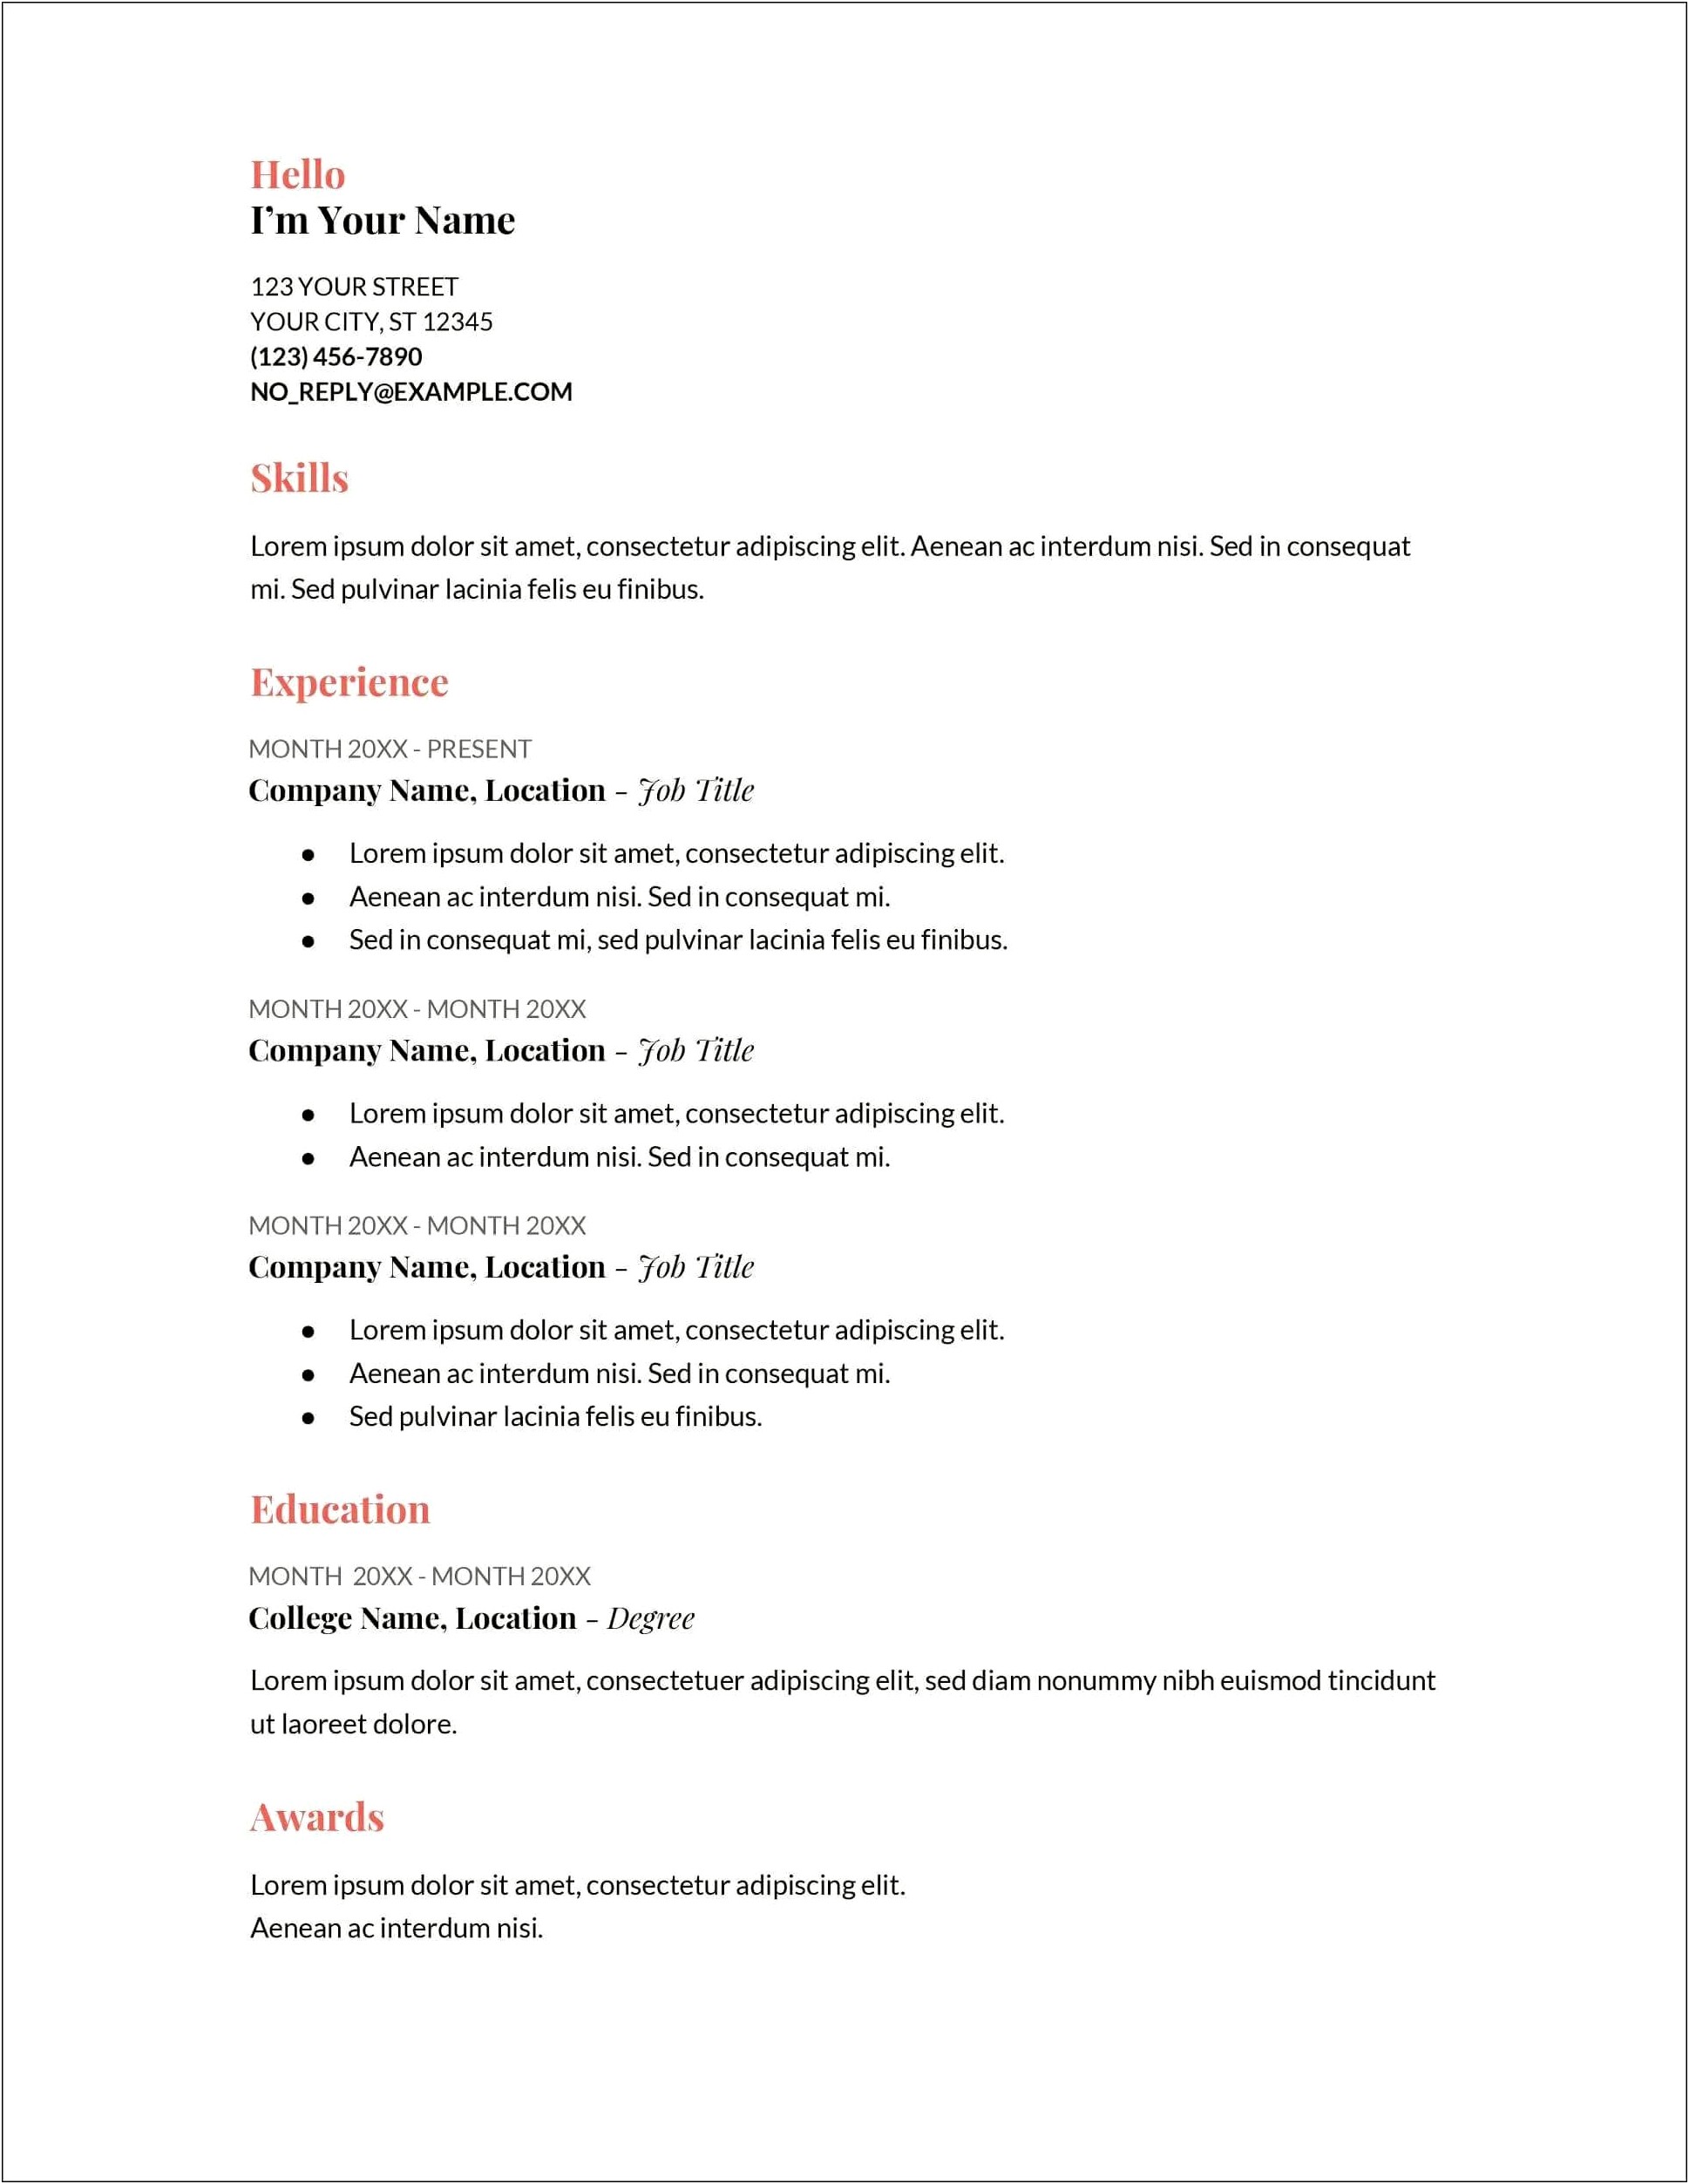 Sample Resume For Applying Job Pdf